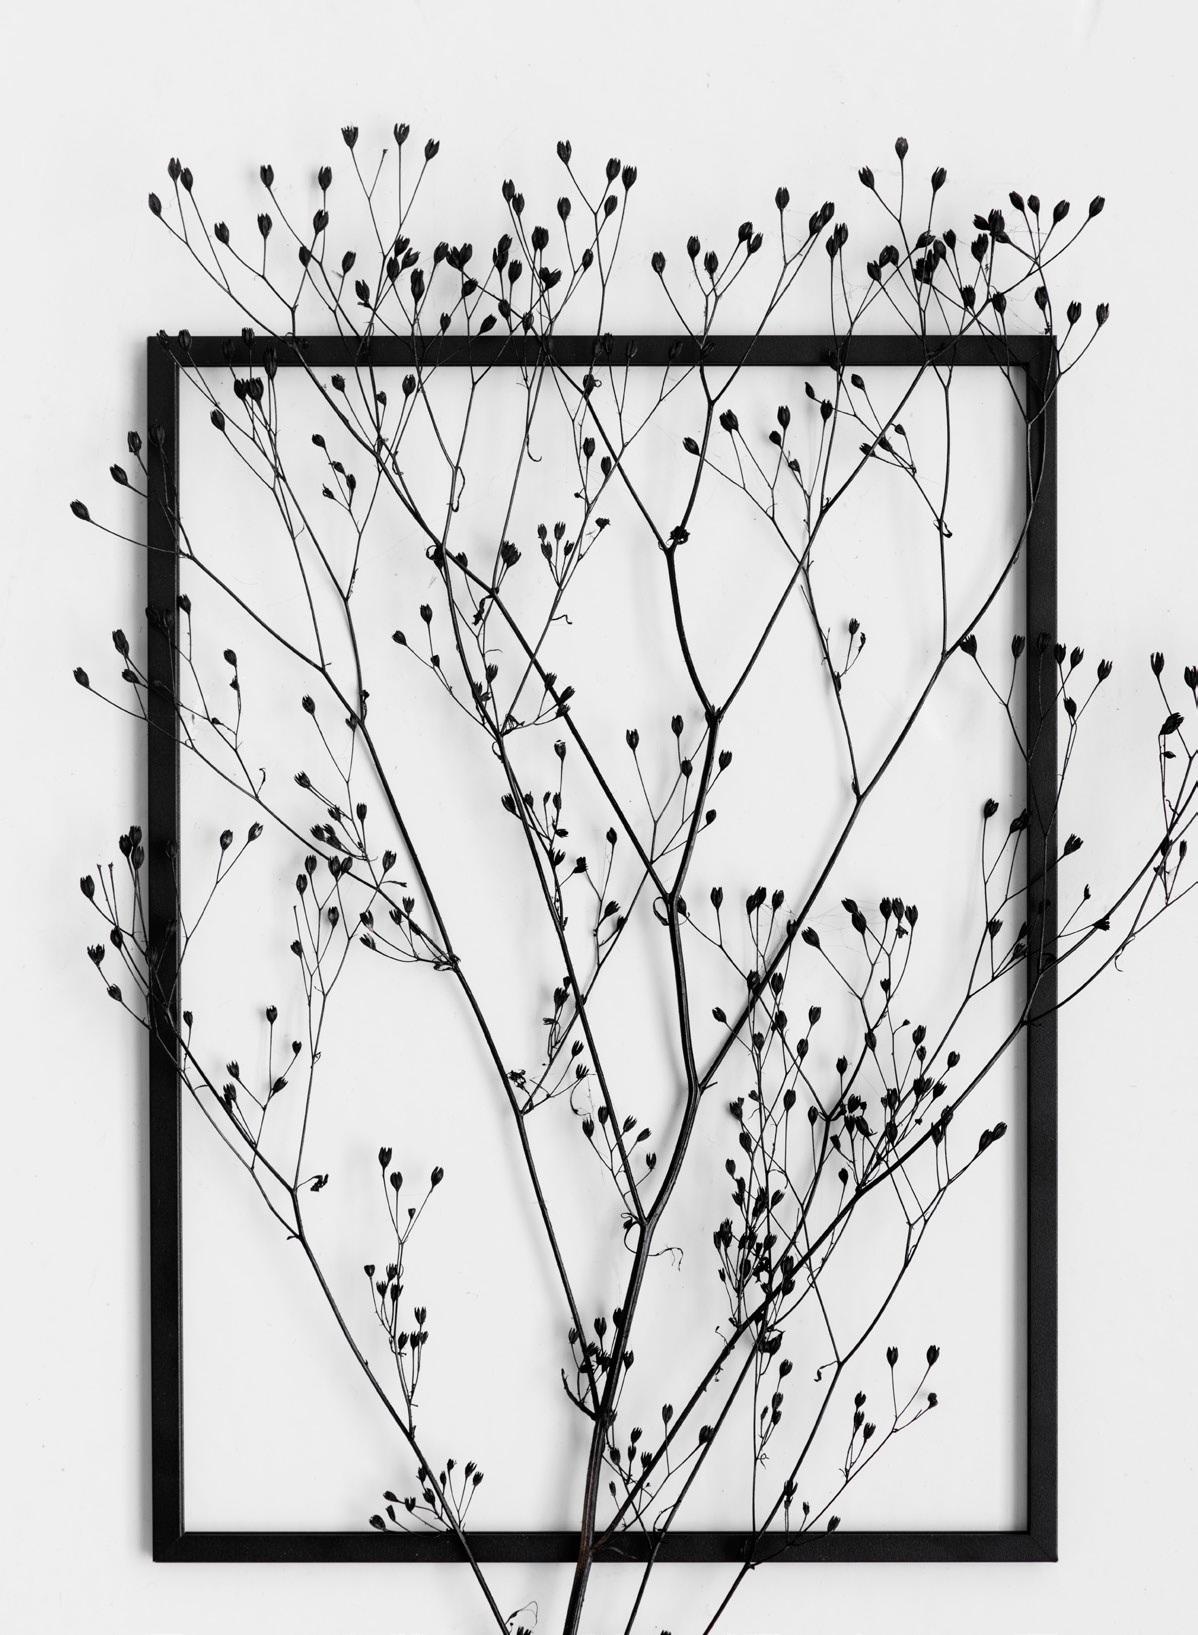 Bilderrahmen aus Aluminium - FRAME von Moebe #bilderrahmen #herbarium ©Moebe